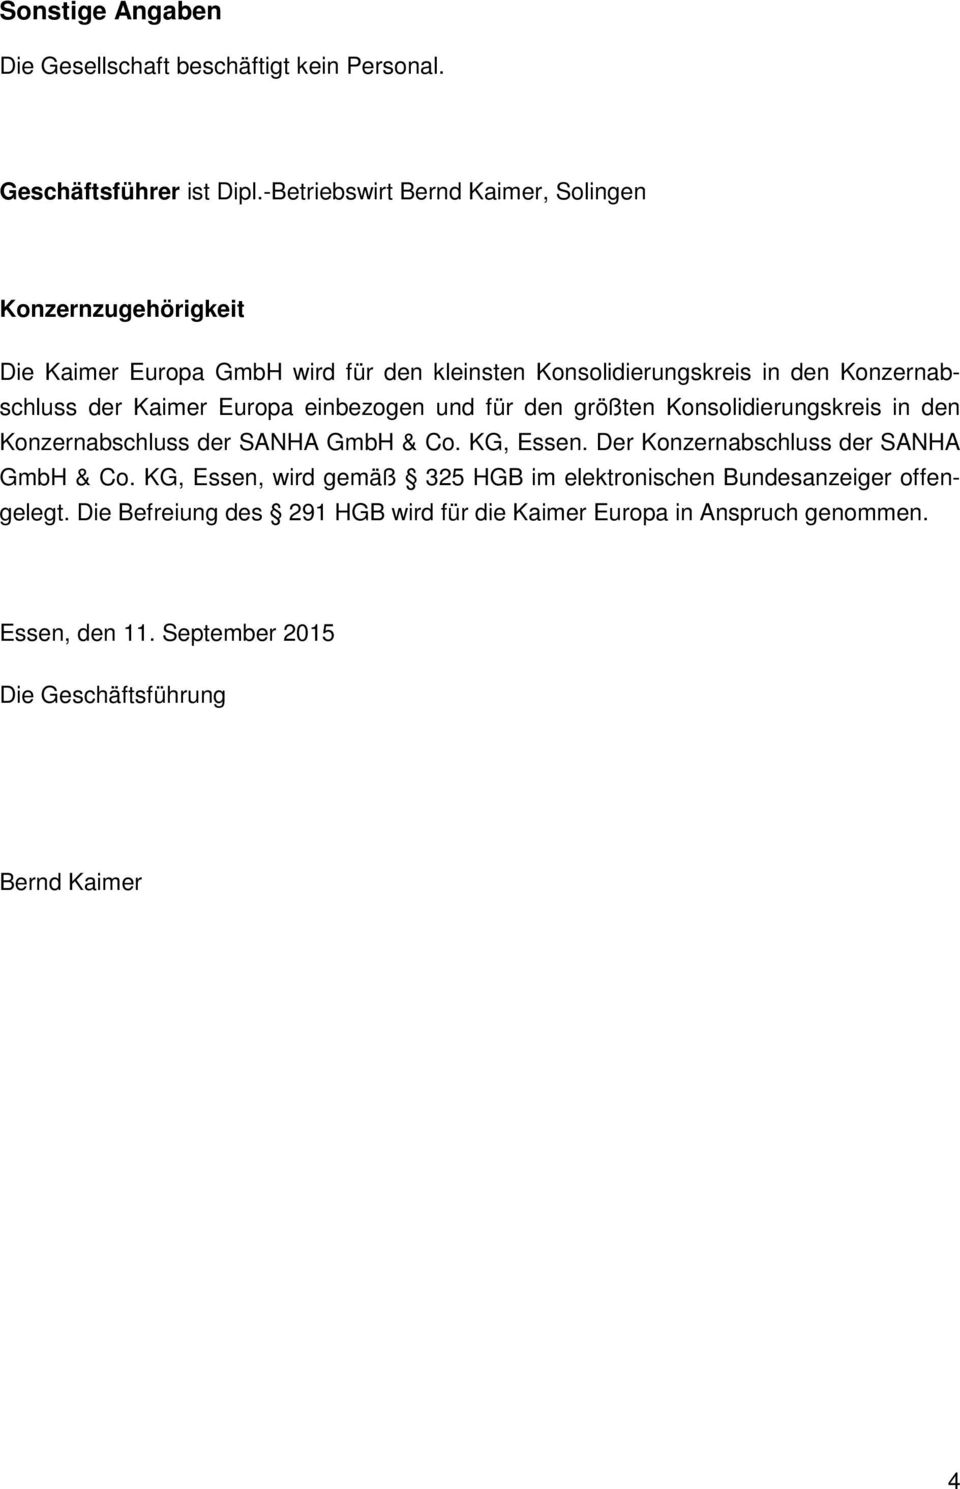 Kaimer Europa einbezogen und für den größten Konsolidierungskreis in den Konzernabschluss der SANHA GmbH & Co. KG, Essen.